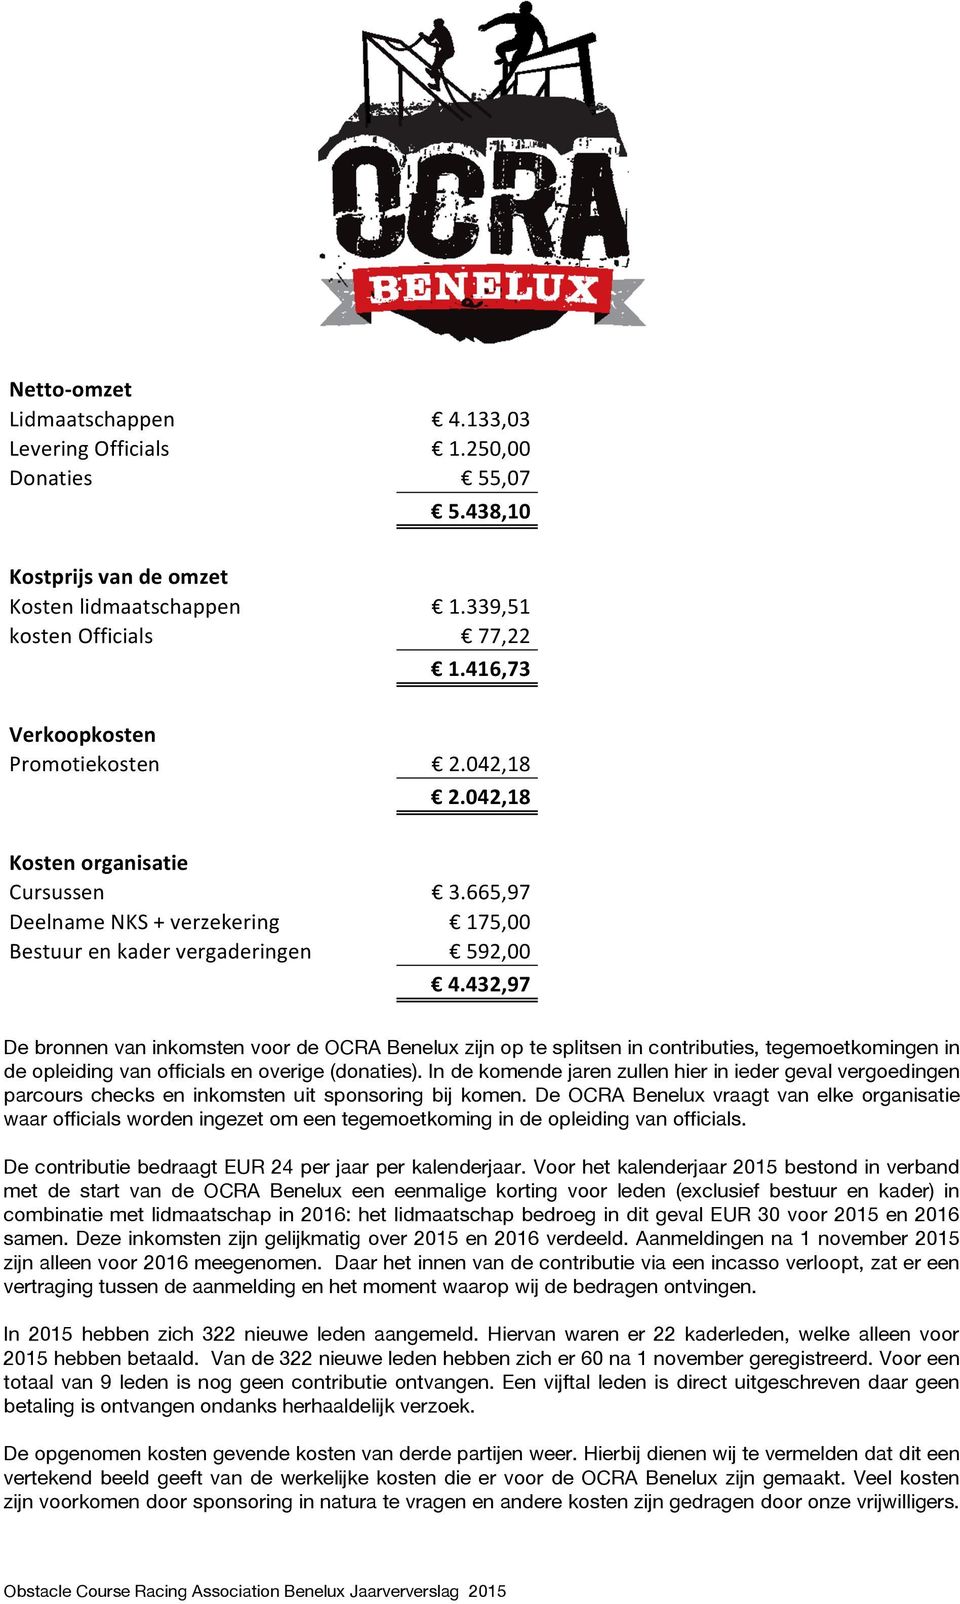 432,97 De bronnen van inkomsten voor de OCRA Benelux zijn op te splitsen in contributies, tegemoetkomingen in de opleiding van officials en overige (donaties).